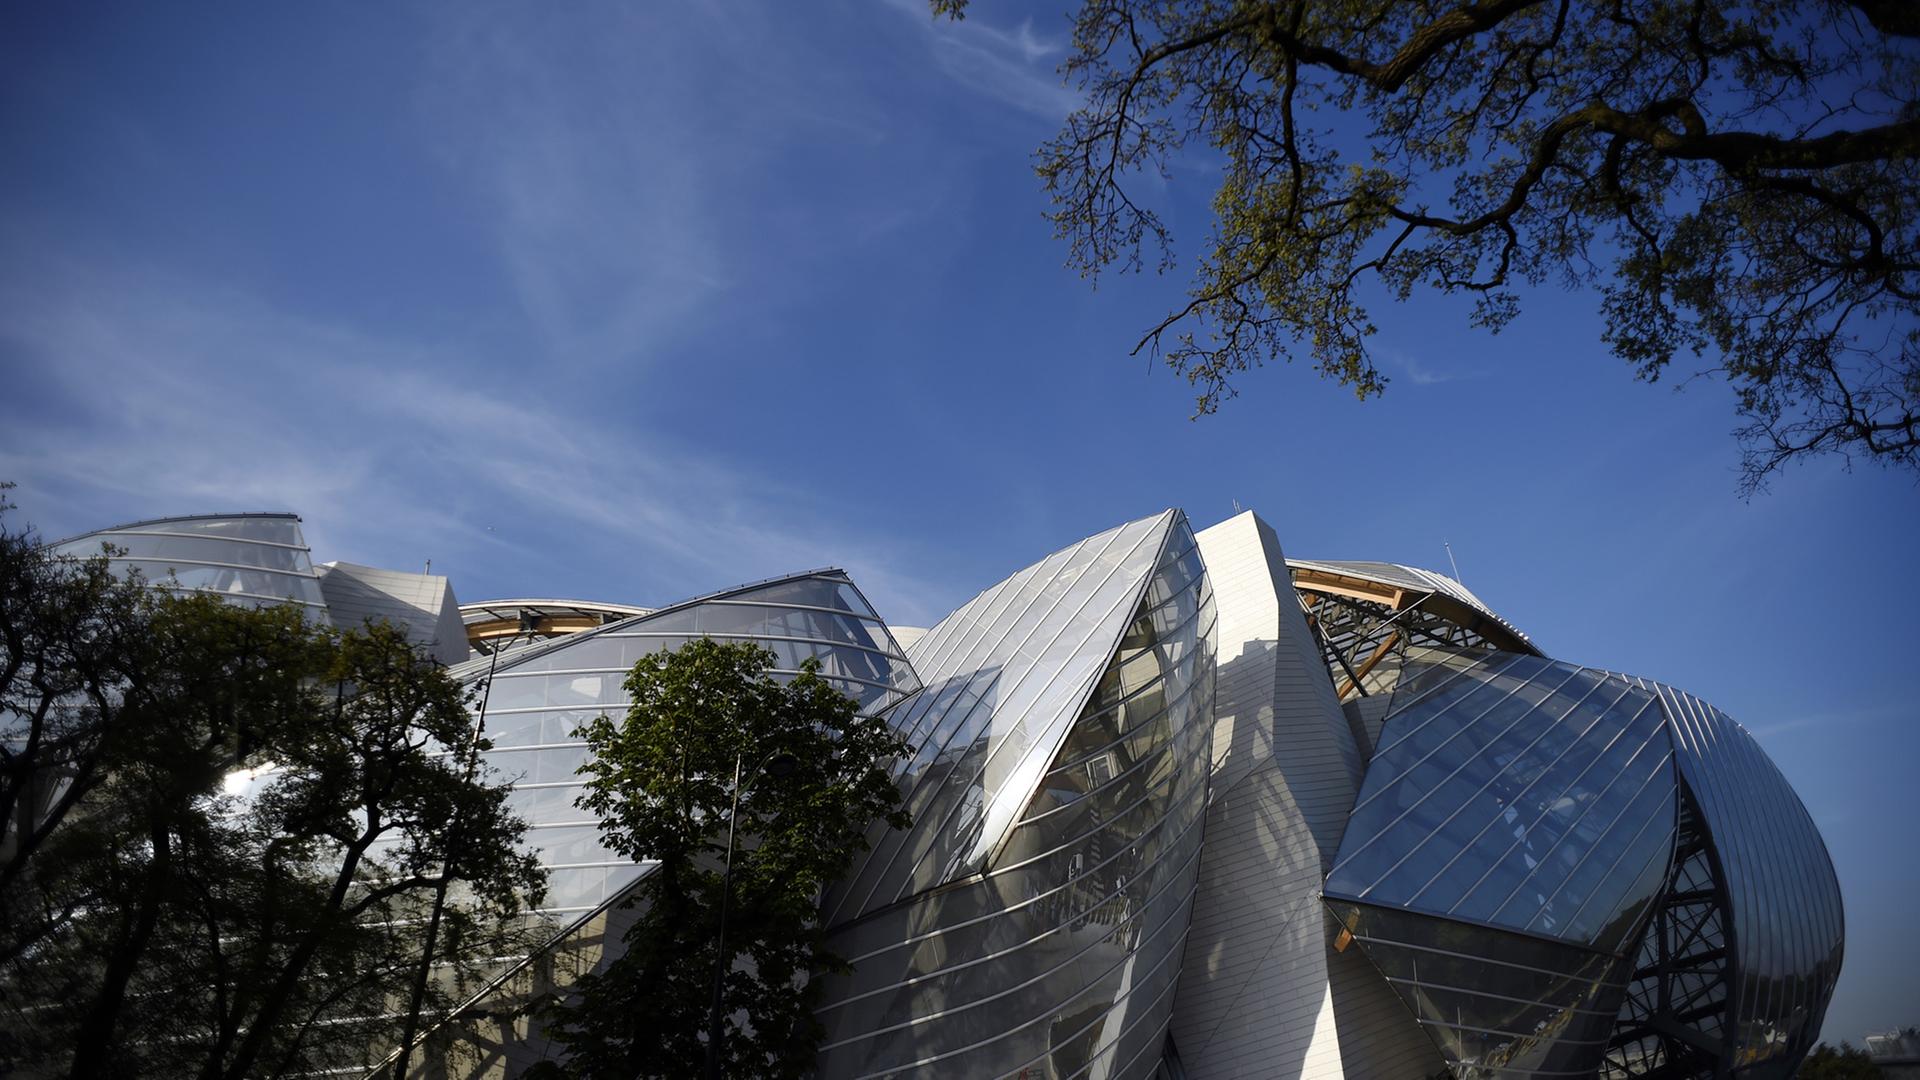 Fondation Louis Vuitton von Frank O. Gehry